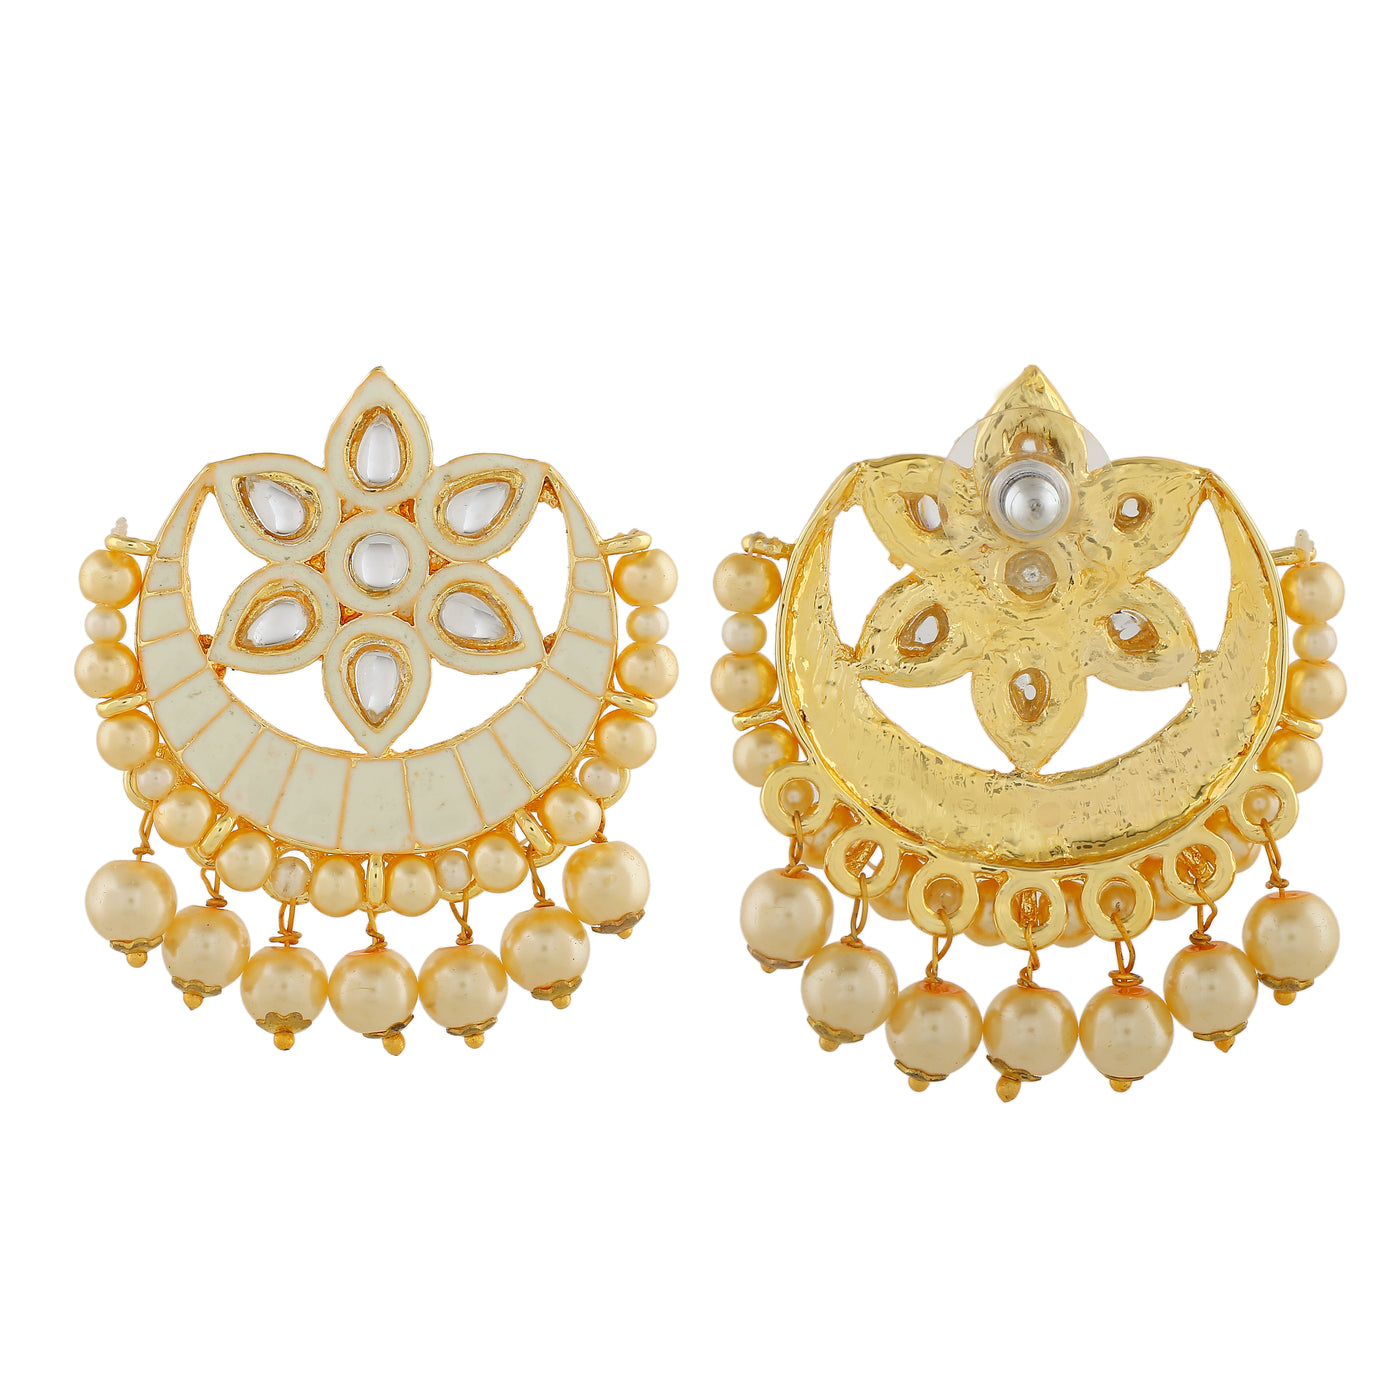 Estele Gold Plated Beautiful Kundan Meenakari Earrings with Pearl & Cream Enamel for Women